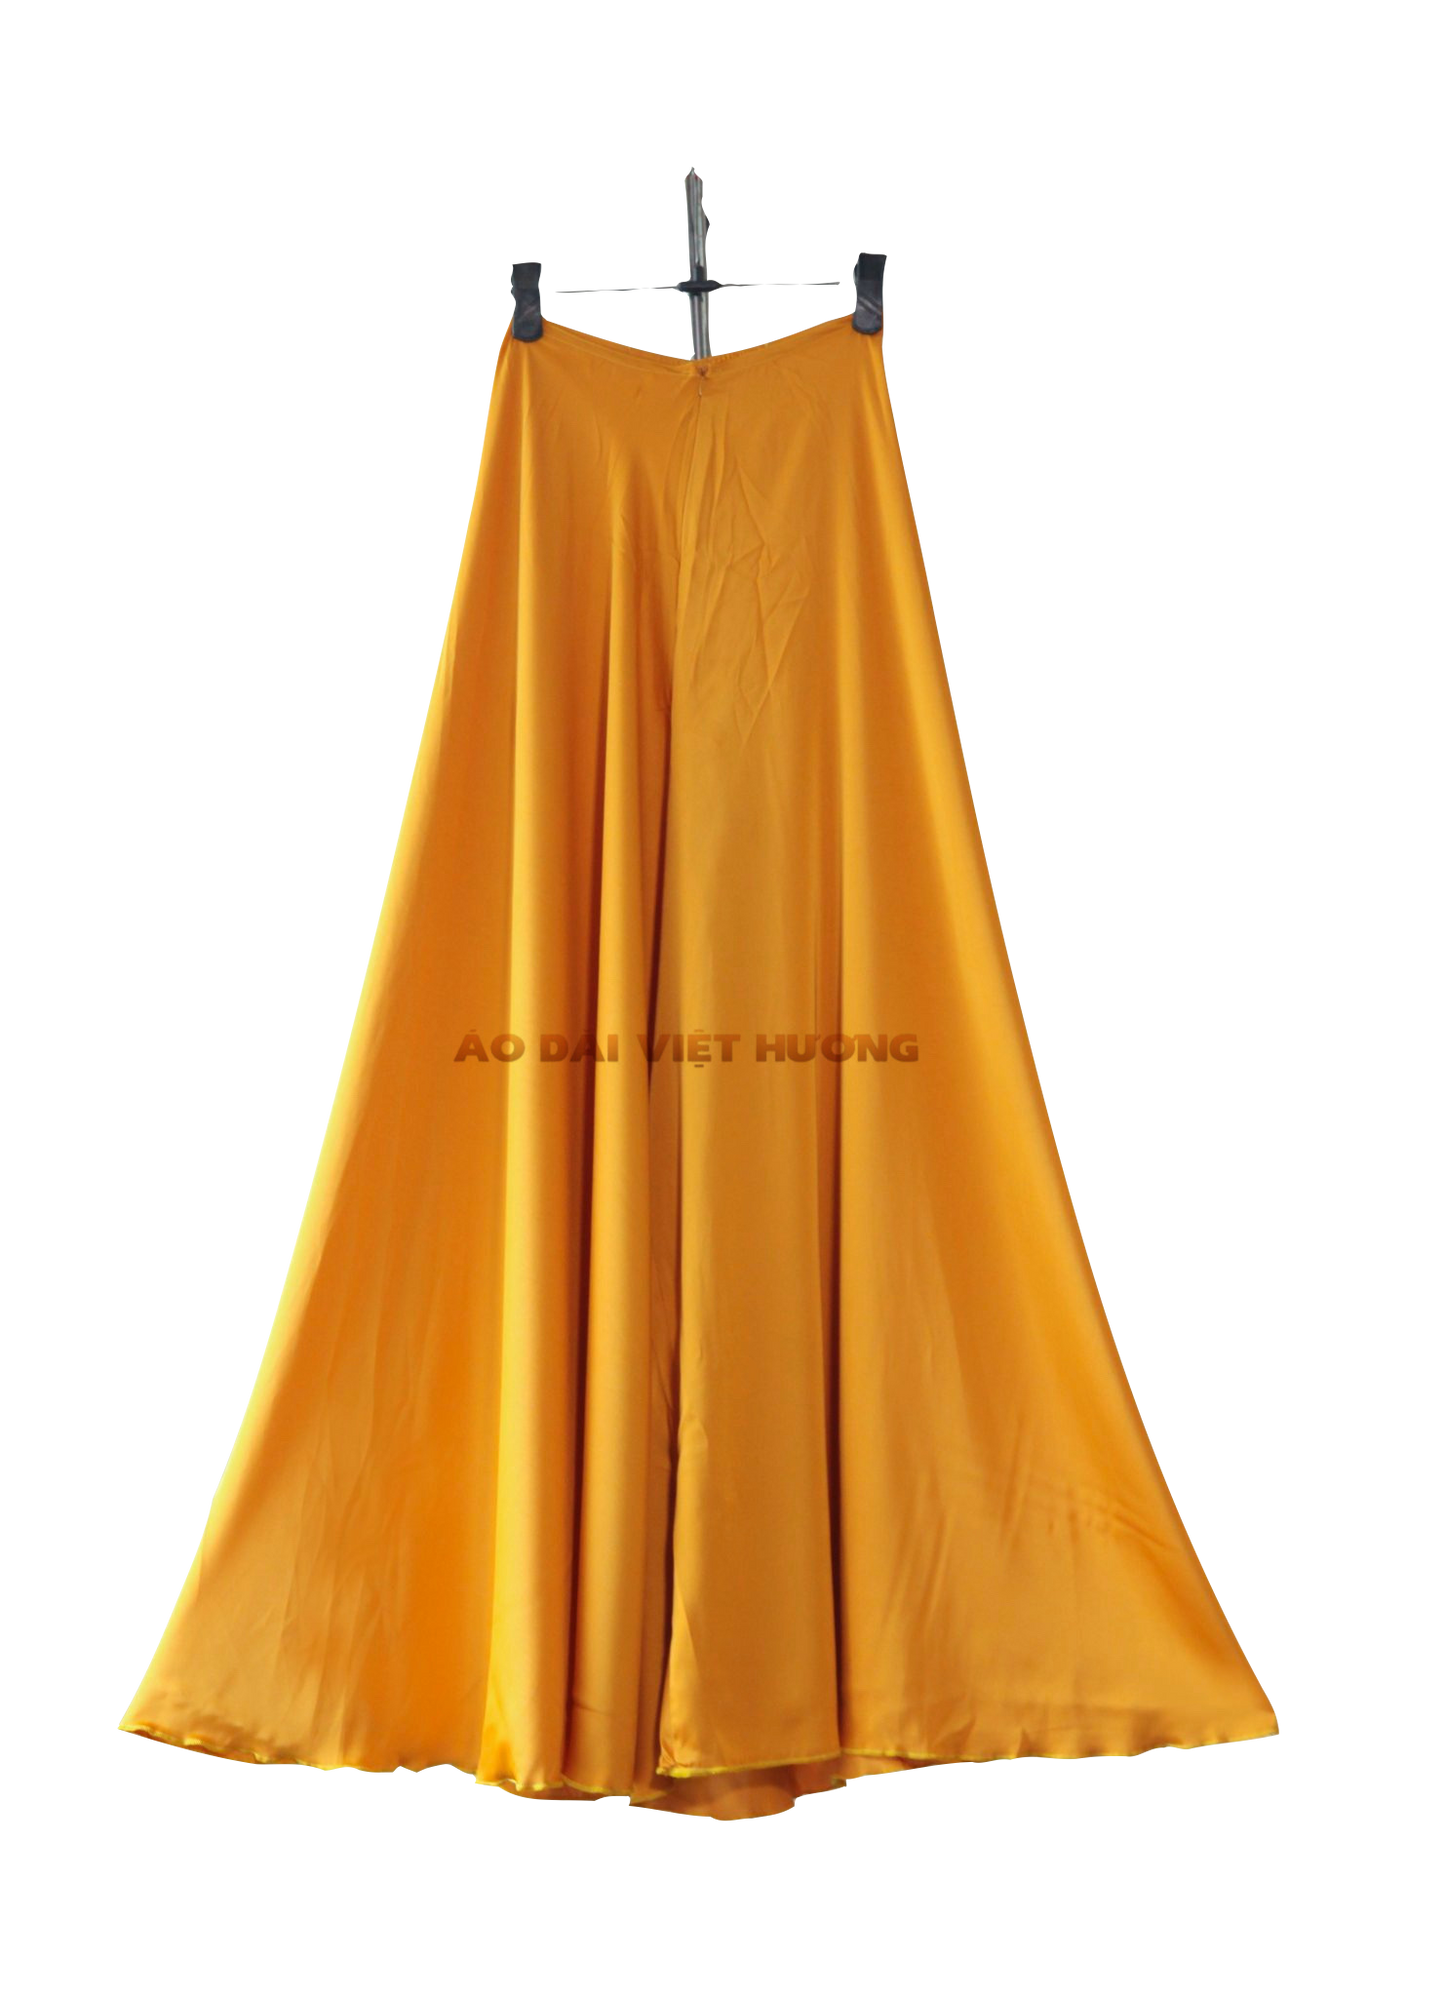 504 - Quần Váy Vàng Hổ Phách Thái Tuấn Silk (Quần Váy Ống Xéo Lụa Thái Tuấn Vàng Cam)